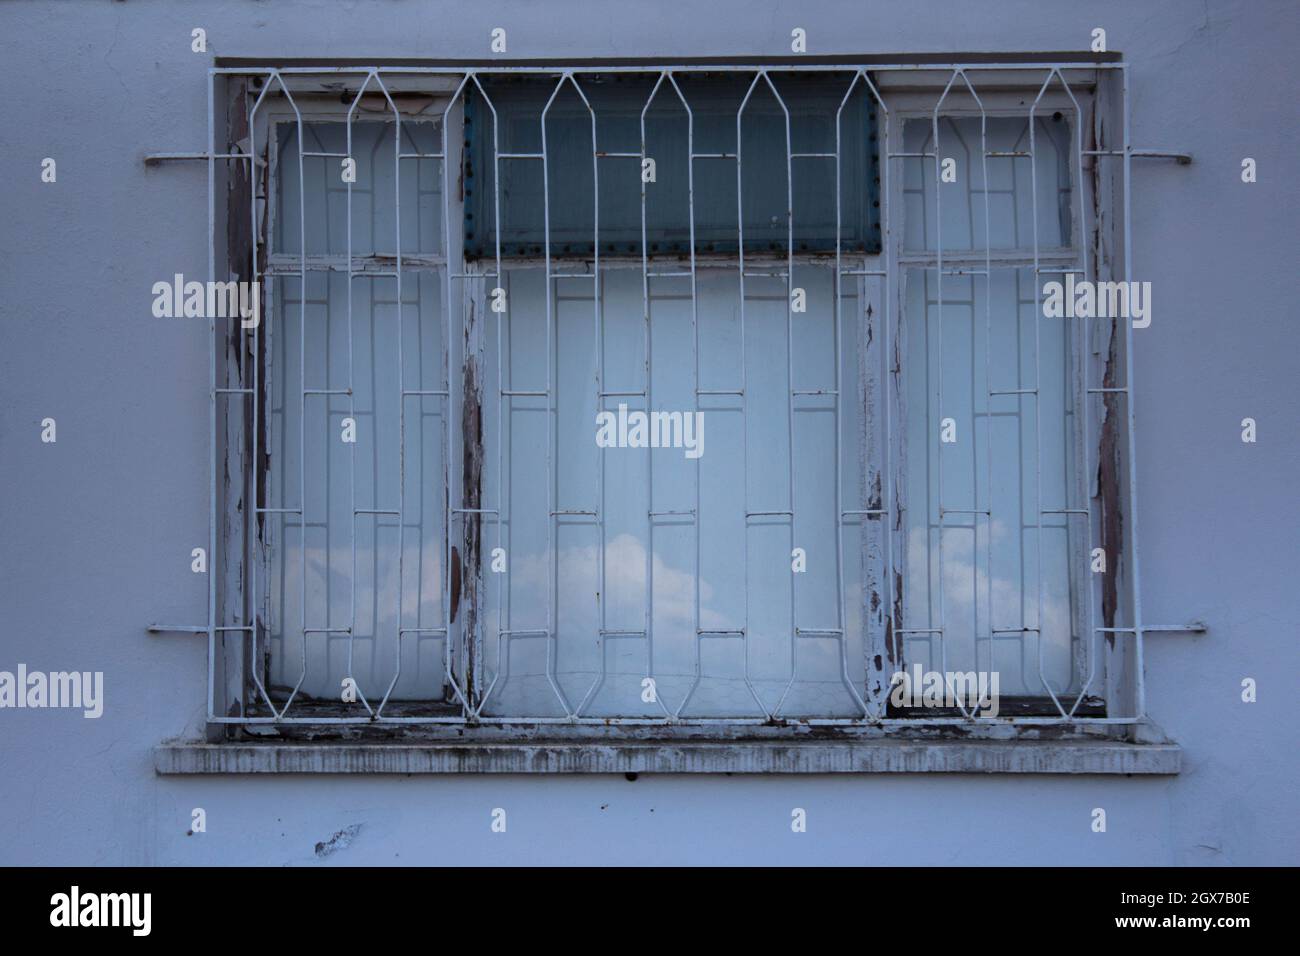 Fenster mit Zaun, um Einbruch zu verhindern. Diebstahl ist ein großes Problem in Ländern der Dritten Welt. Stockfoto